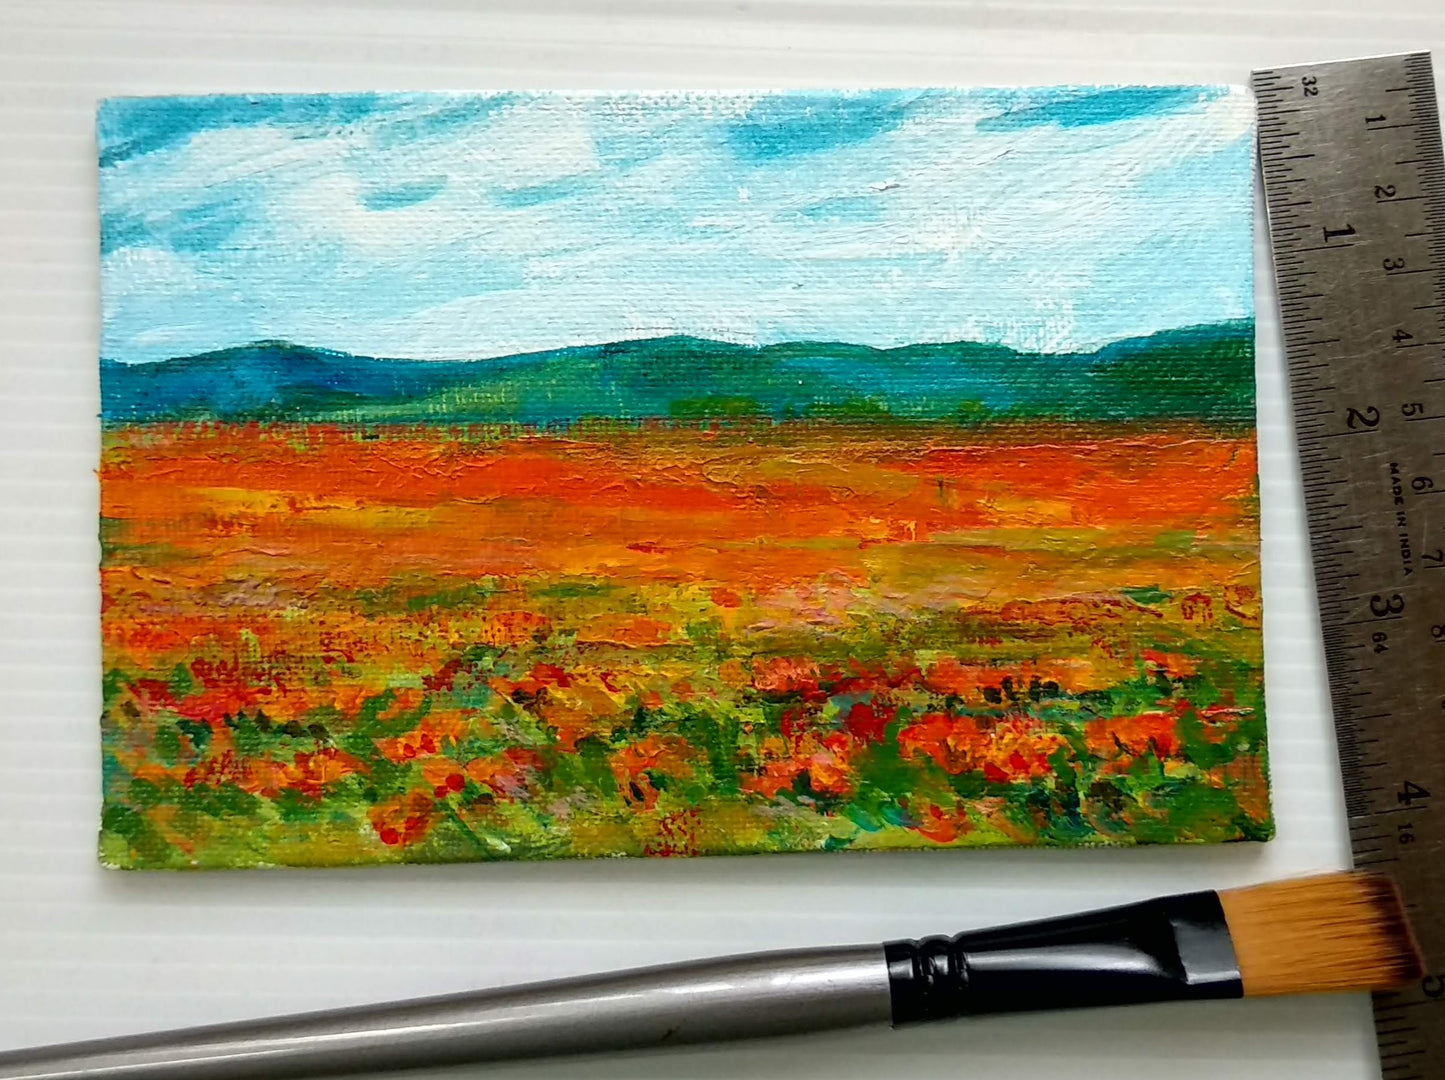 Blue Hills et les champs de coquelicots rouges, peinture acrylique miniature, encadrée et prête à offrir